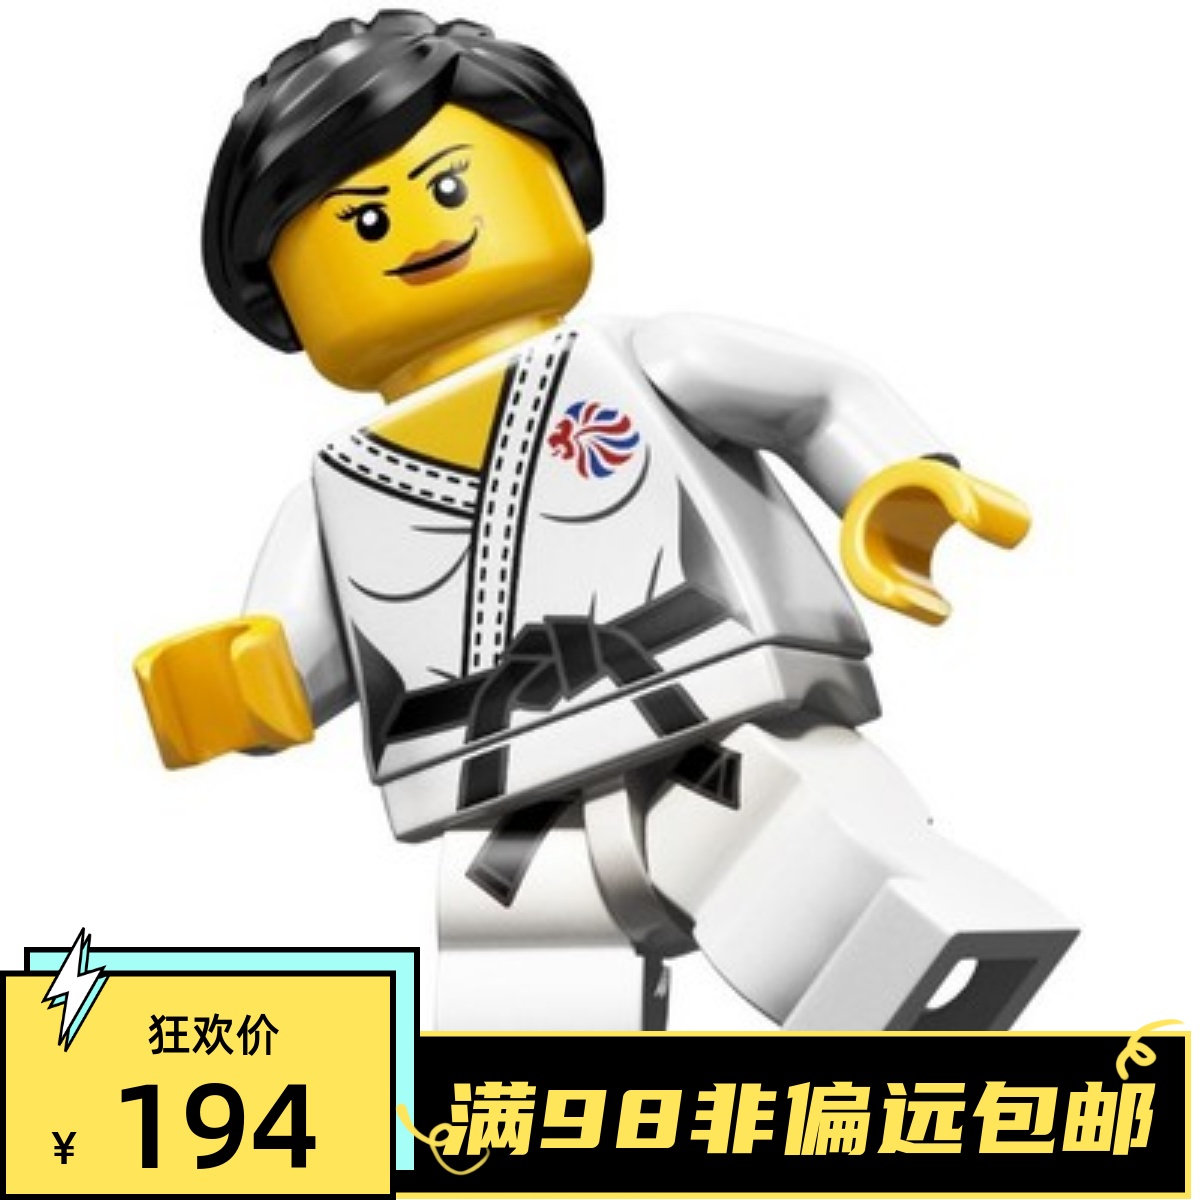 乐高LEGO 抽抽乐 伦敦奥运会 限量 8909 #4 柔道 原封